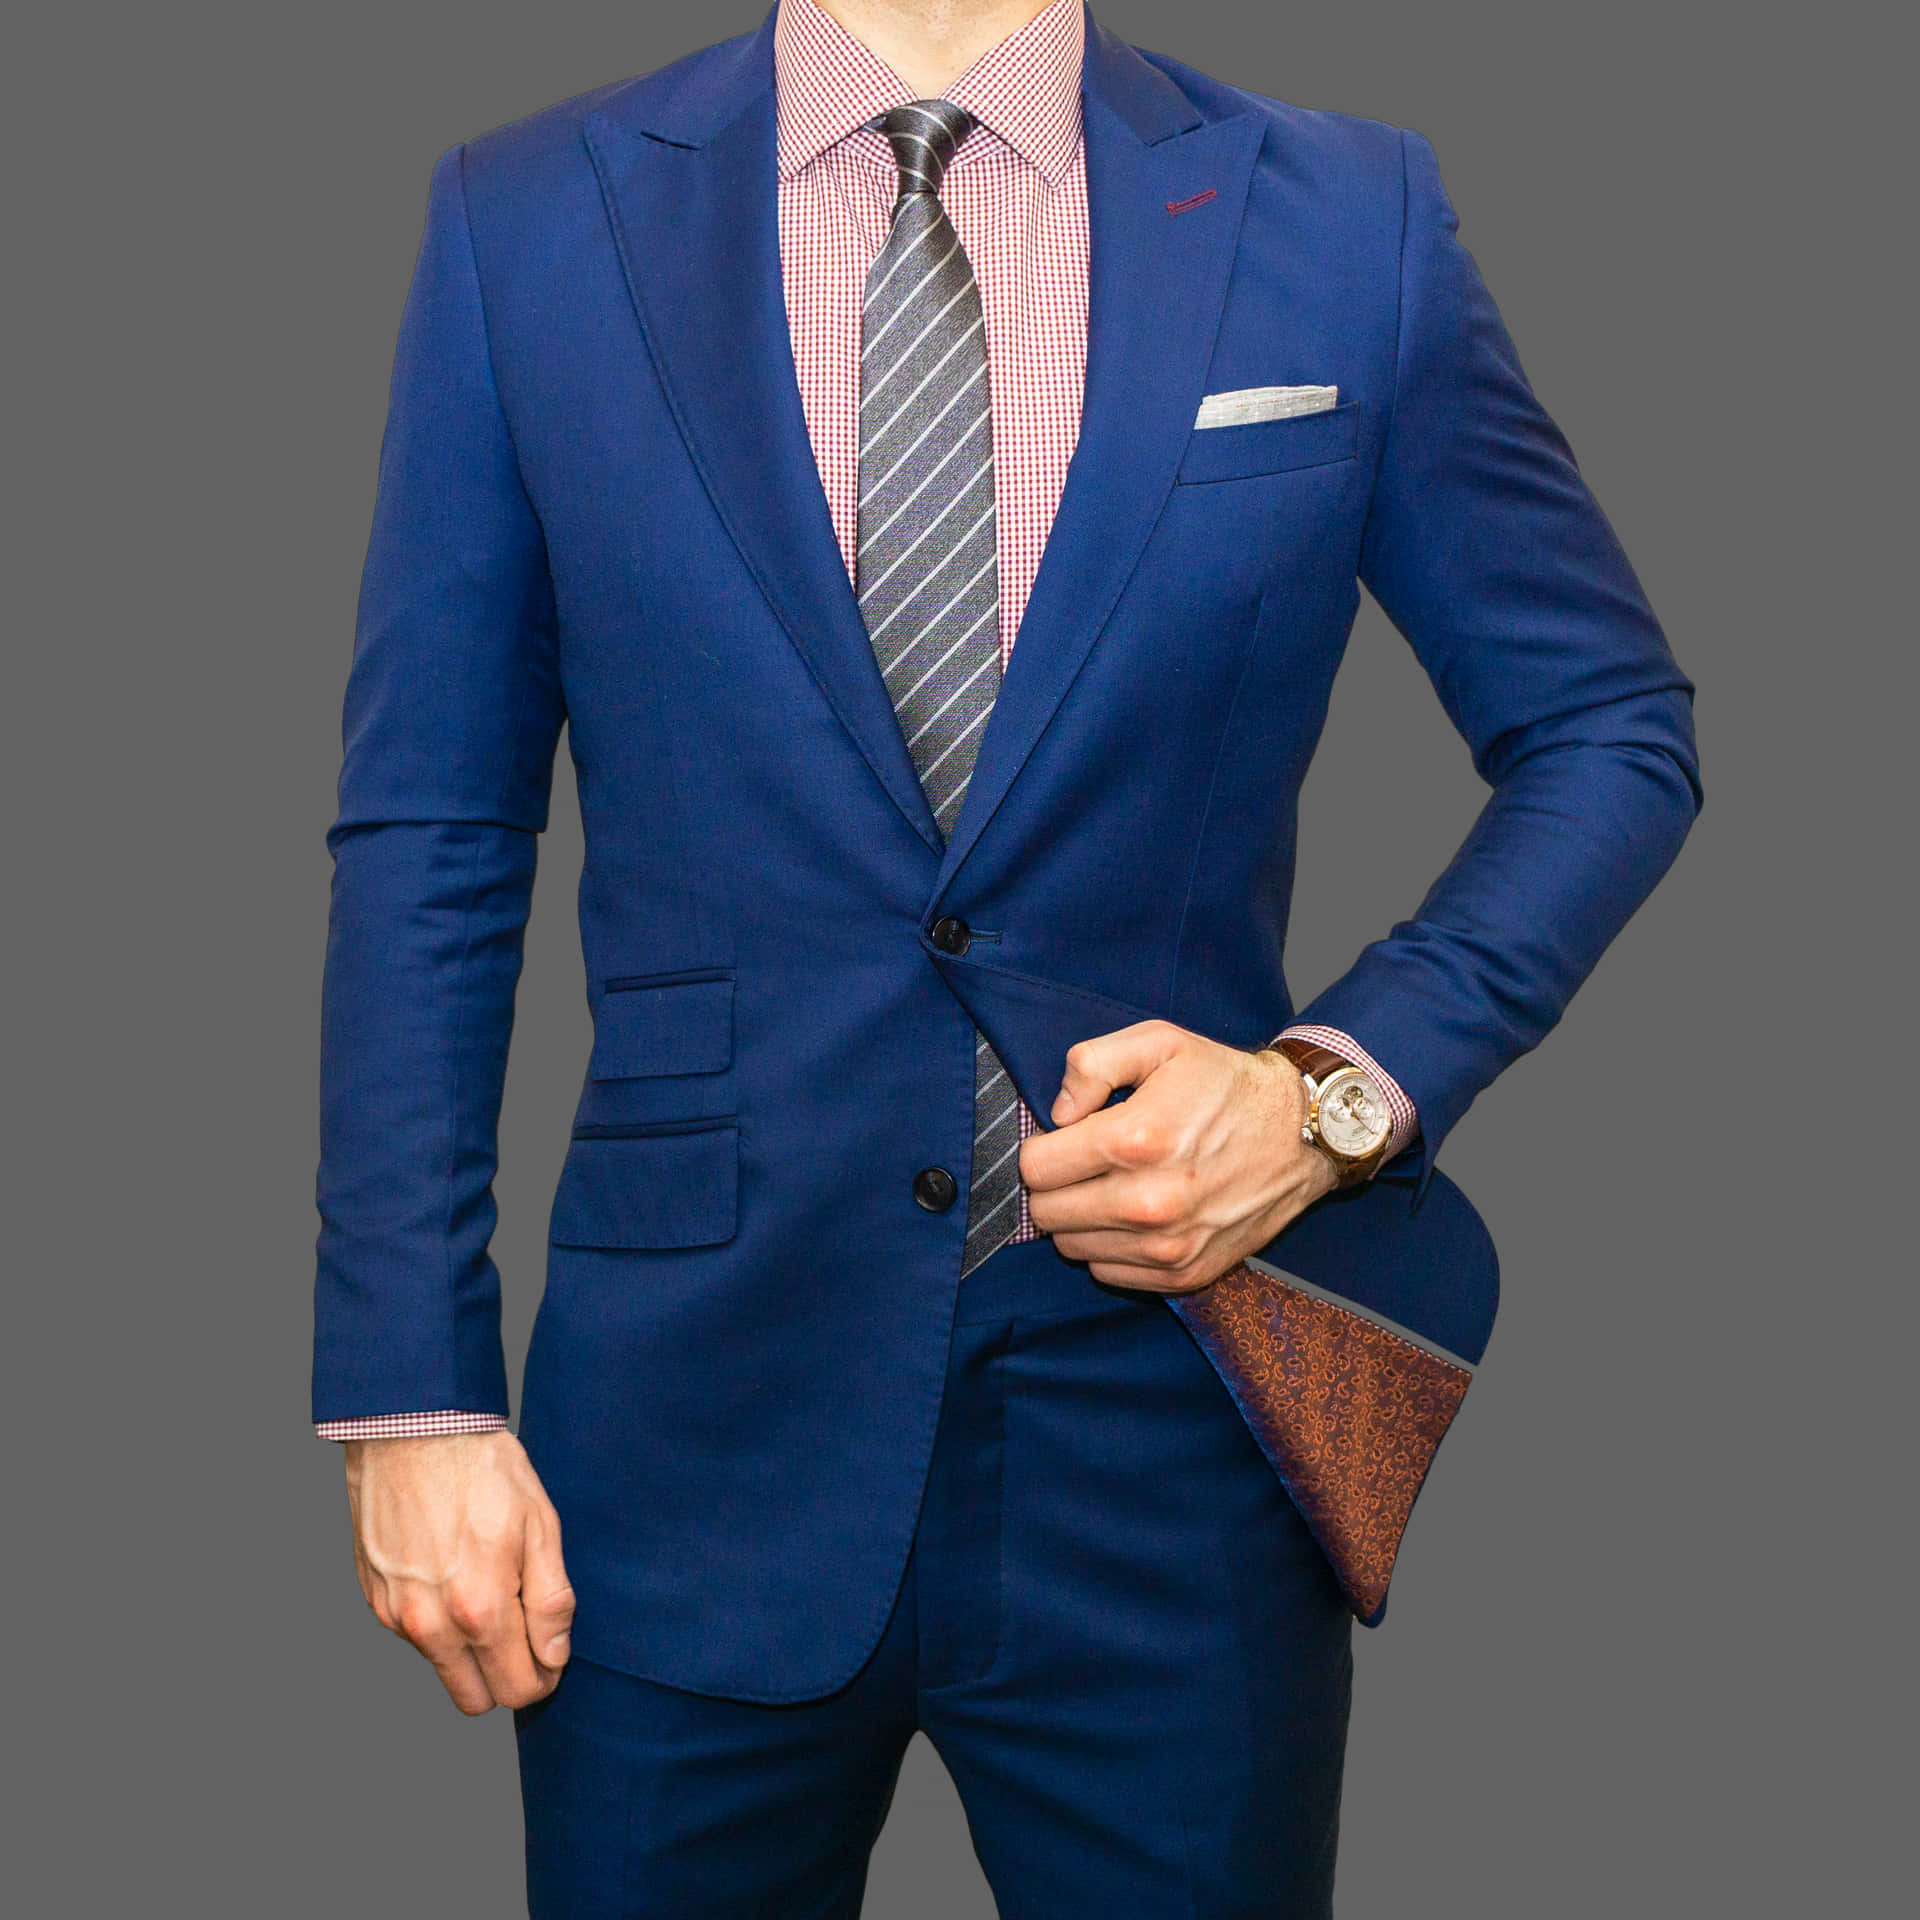 Blue Men Suit Outfit Wallpaper